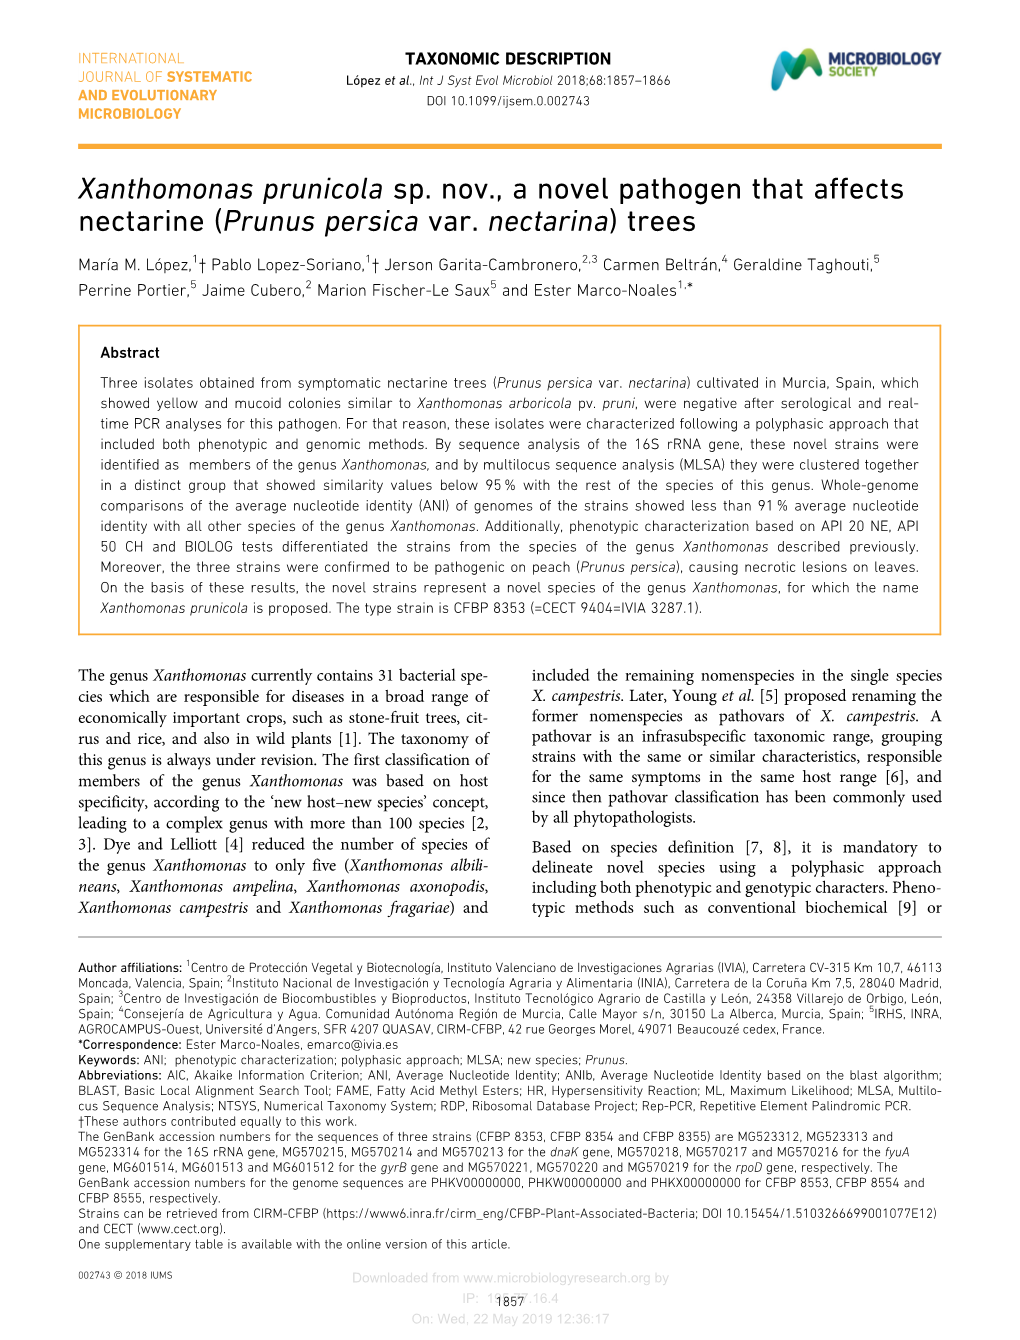 Xanthomonas Prunicola Sp. Nov., a Novel Pathogen That Affects Nectarine (Prunus Persica Var